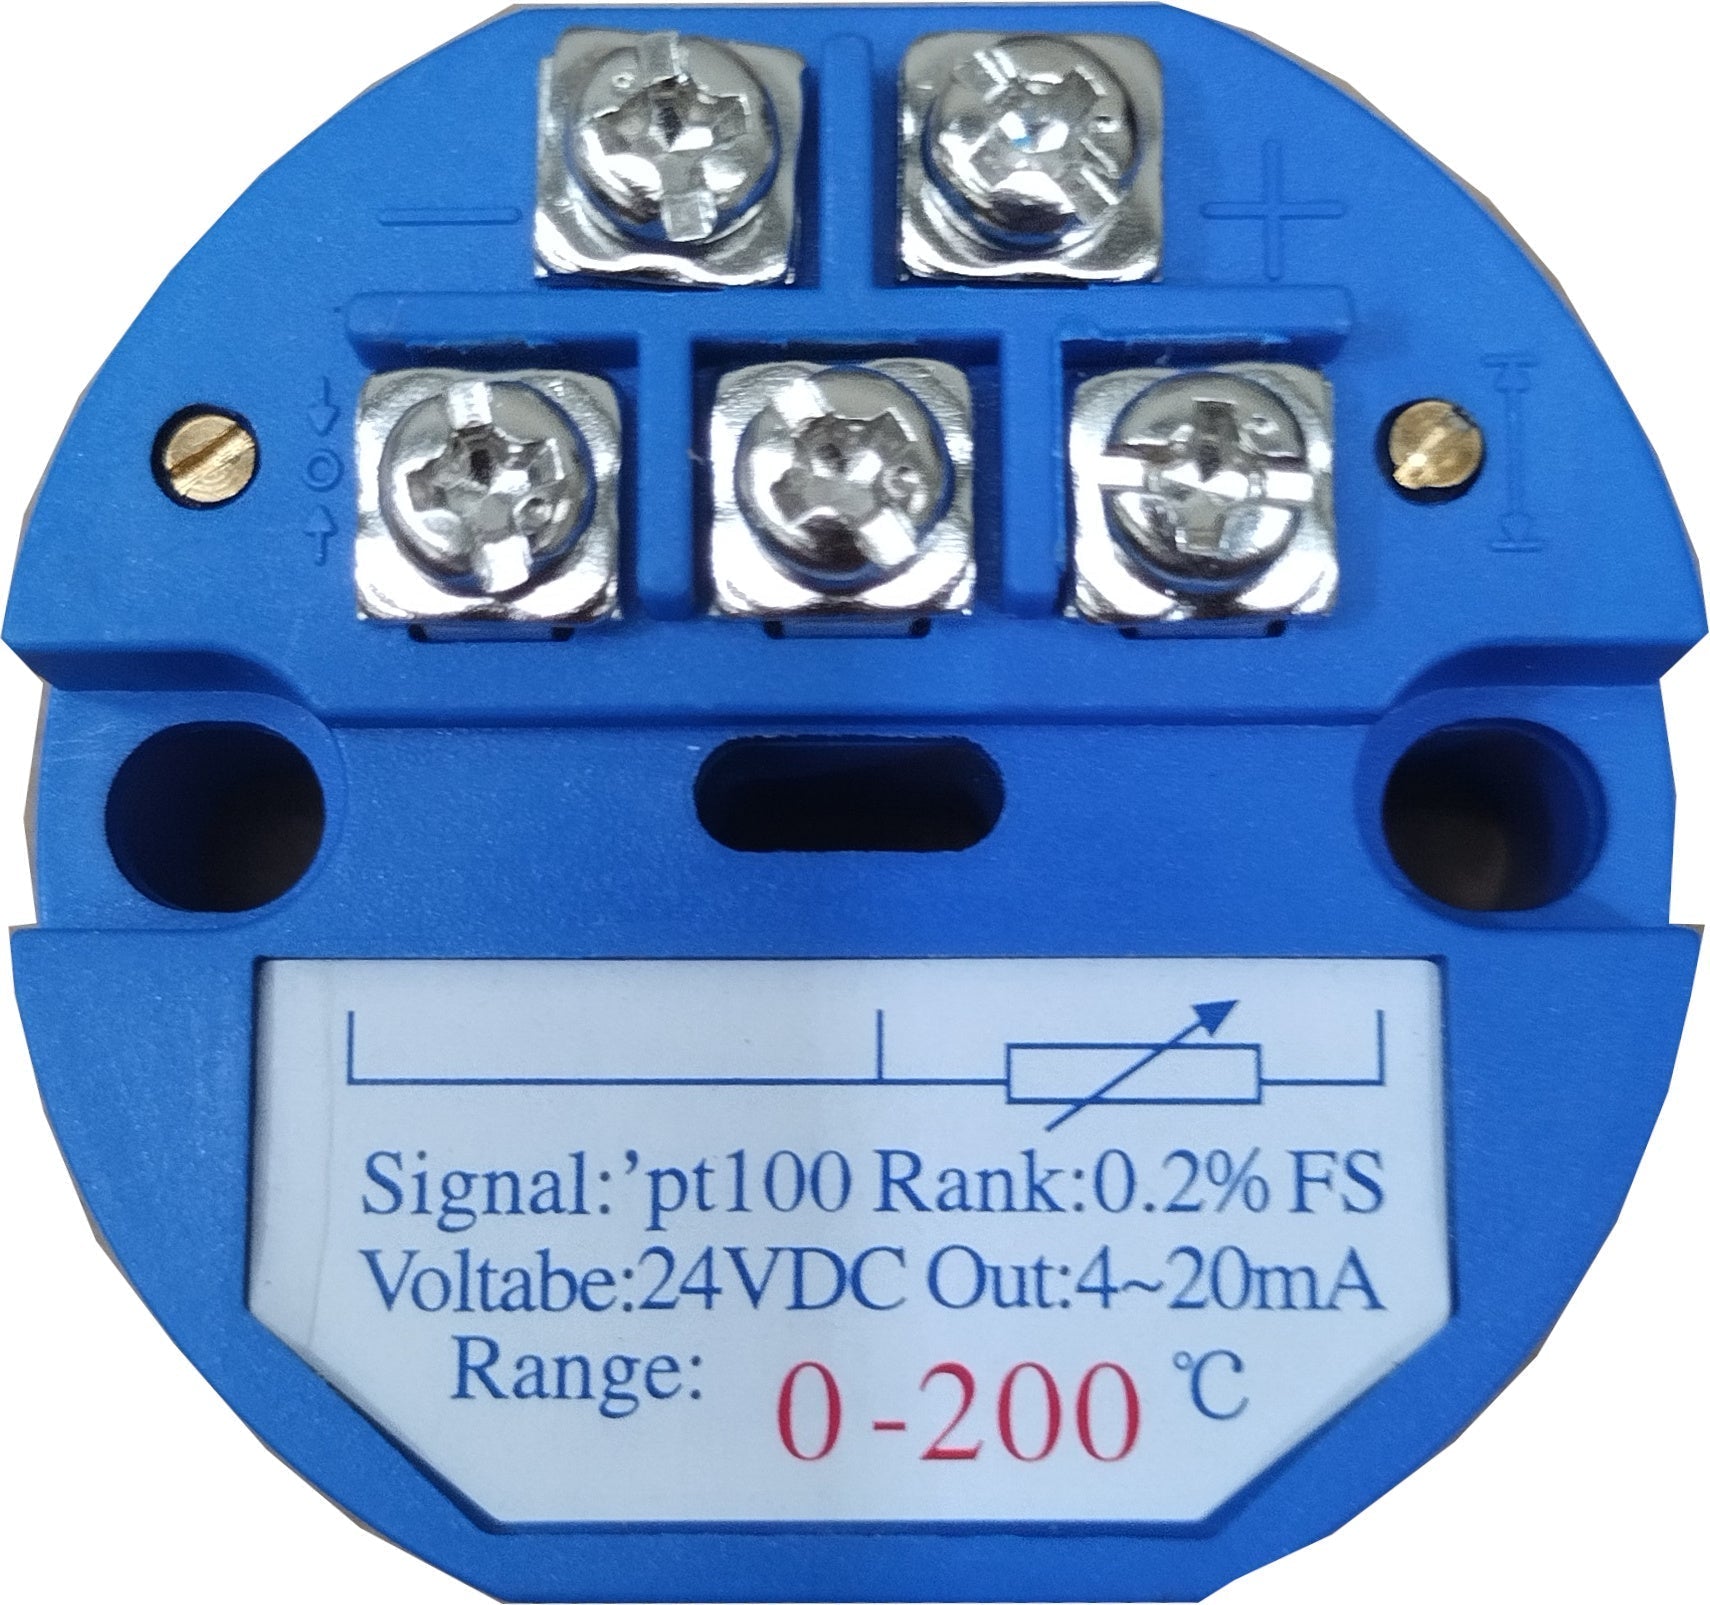 FRTD-Transmitter-0-100-420-24, Pt100, 4-20mA Transmitter, 0 to 100 Deg C, 24VDC Supply